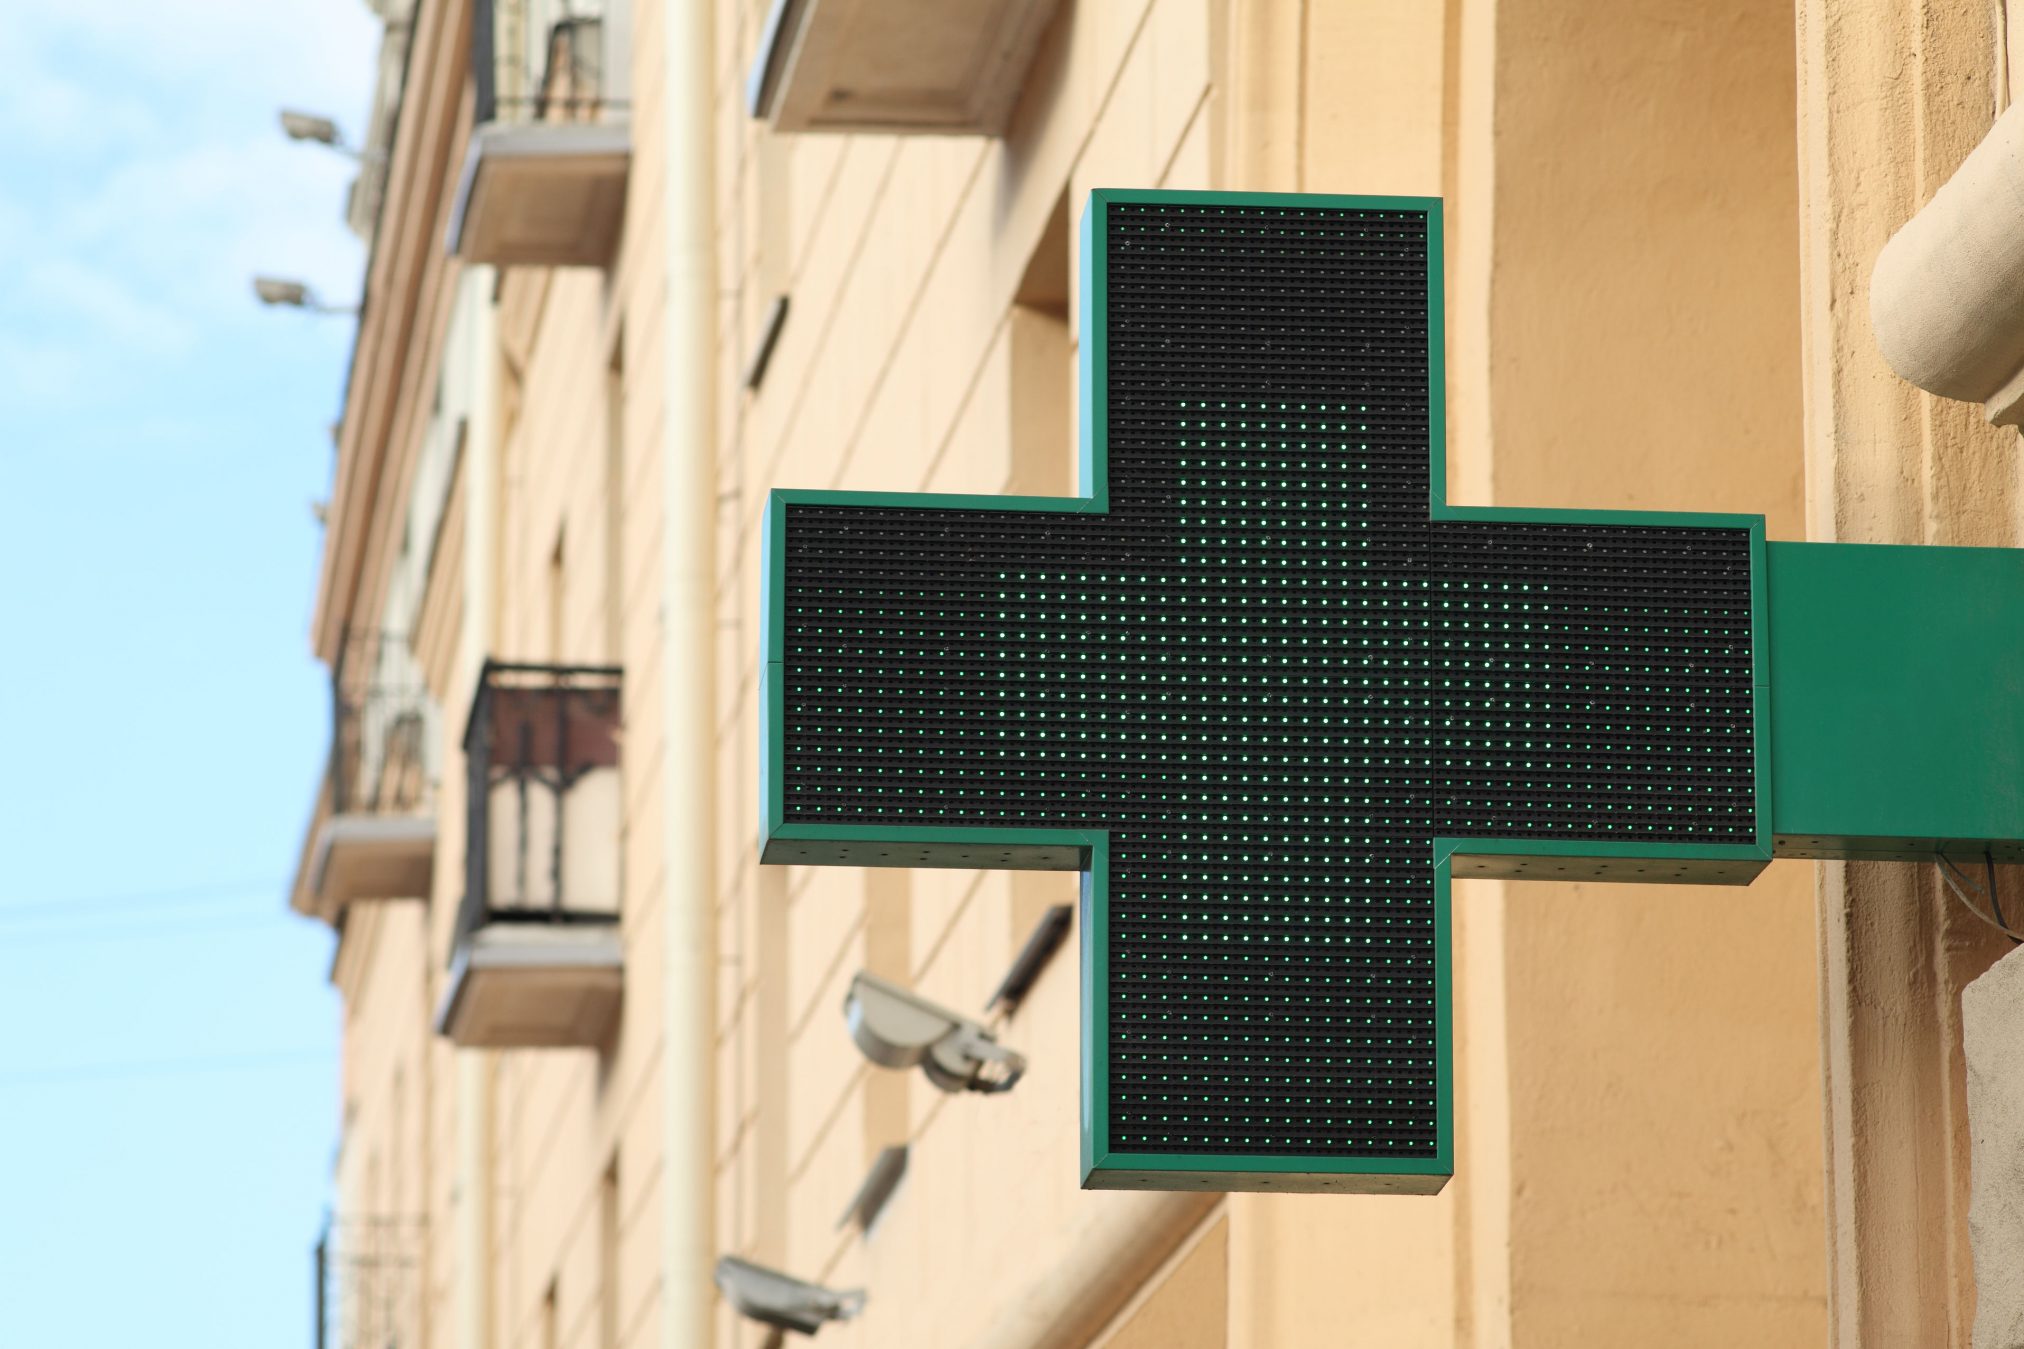 pharmacy sign green cross